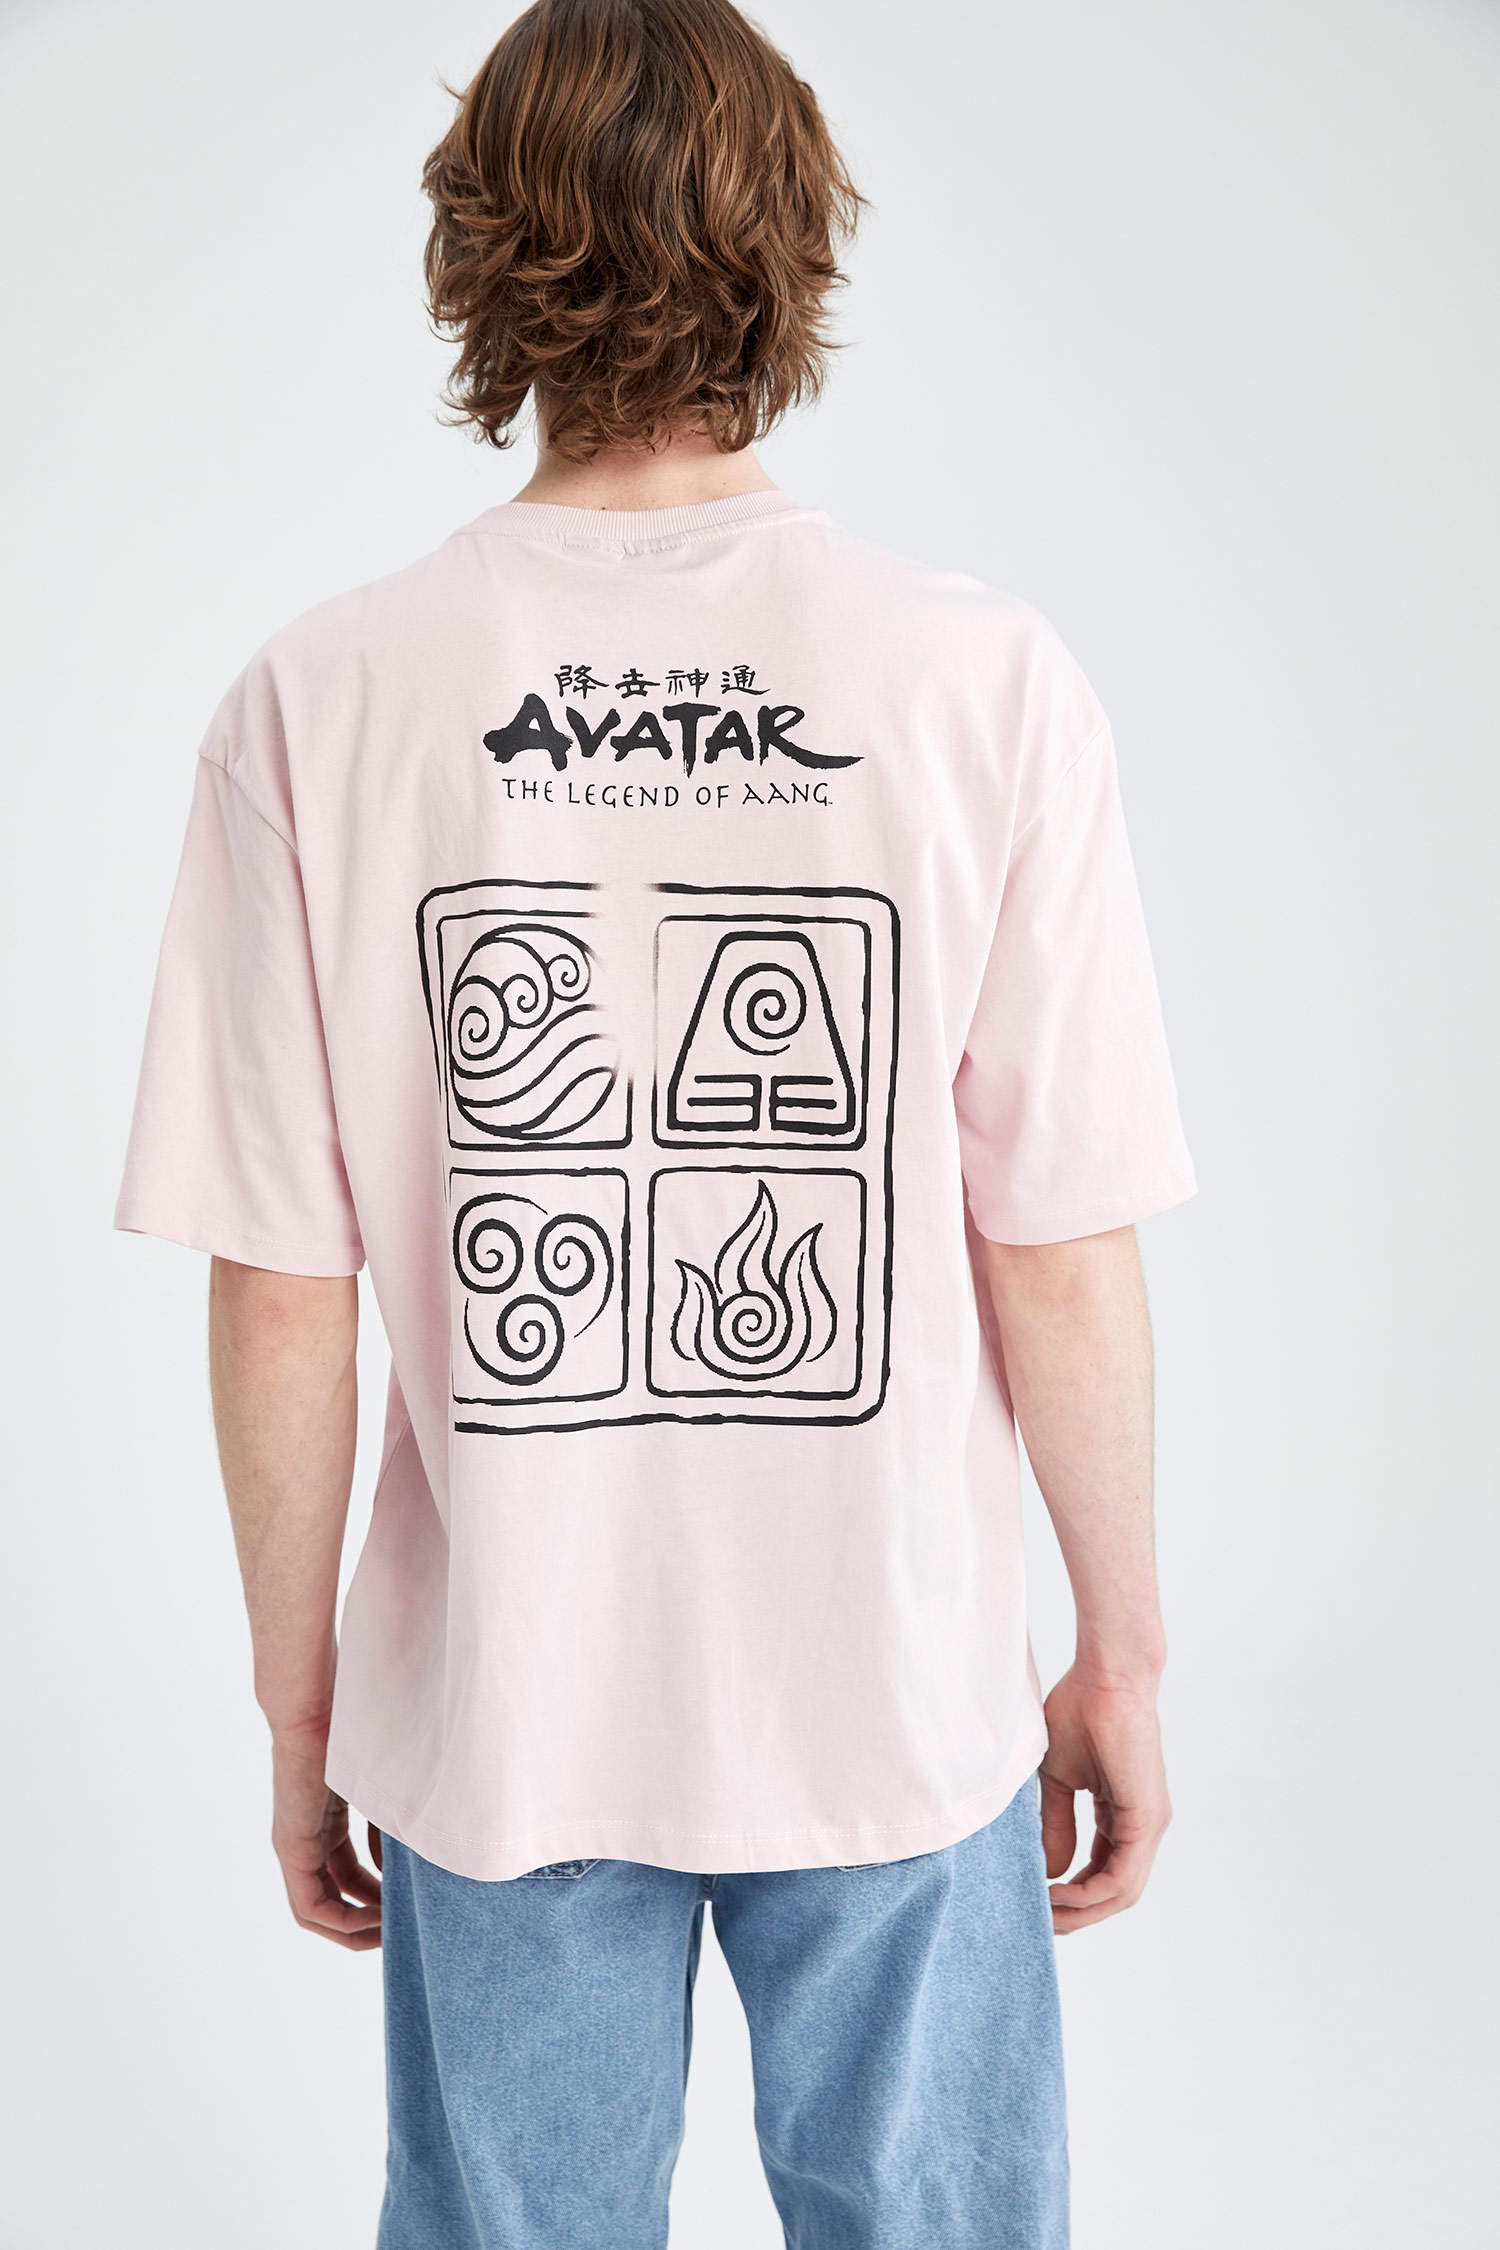 Avatar Graphic Print Round Neck Black TShirtUnisex Cotton Printed  AvatarThe  Way of